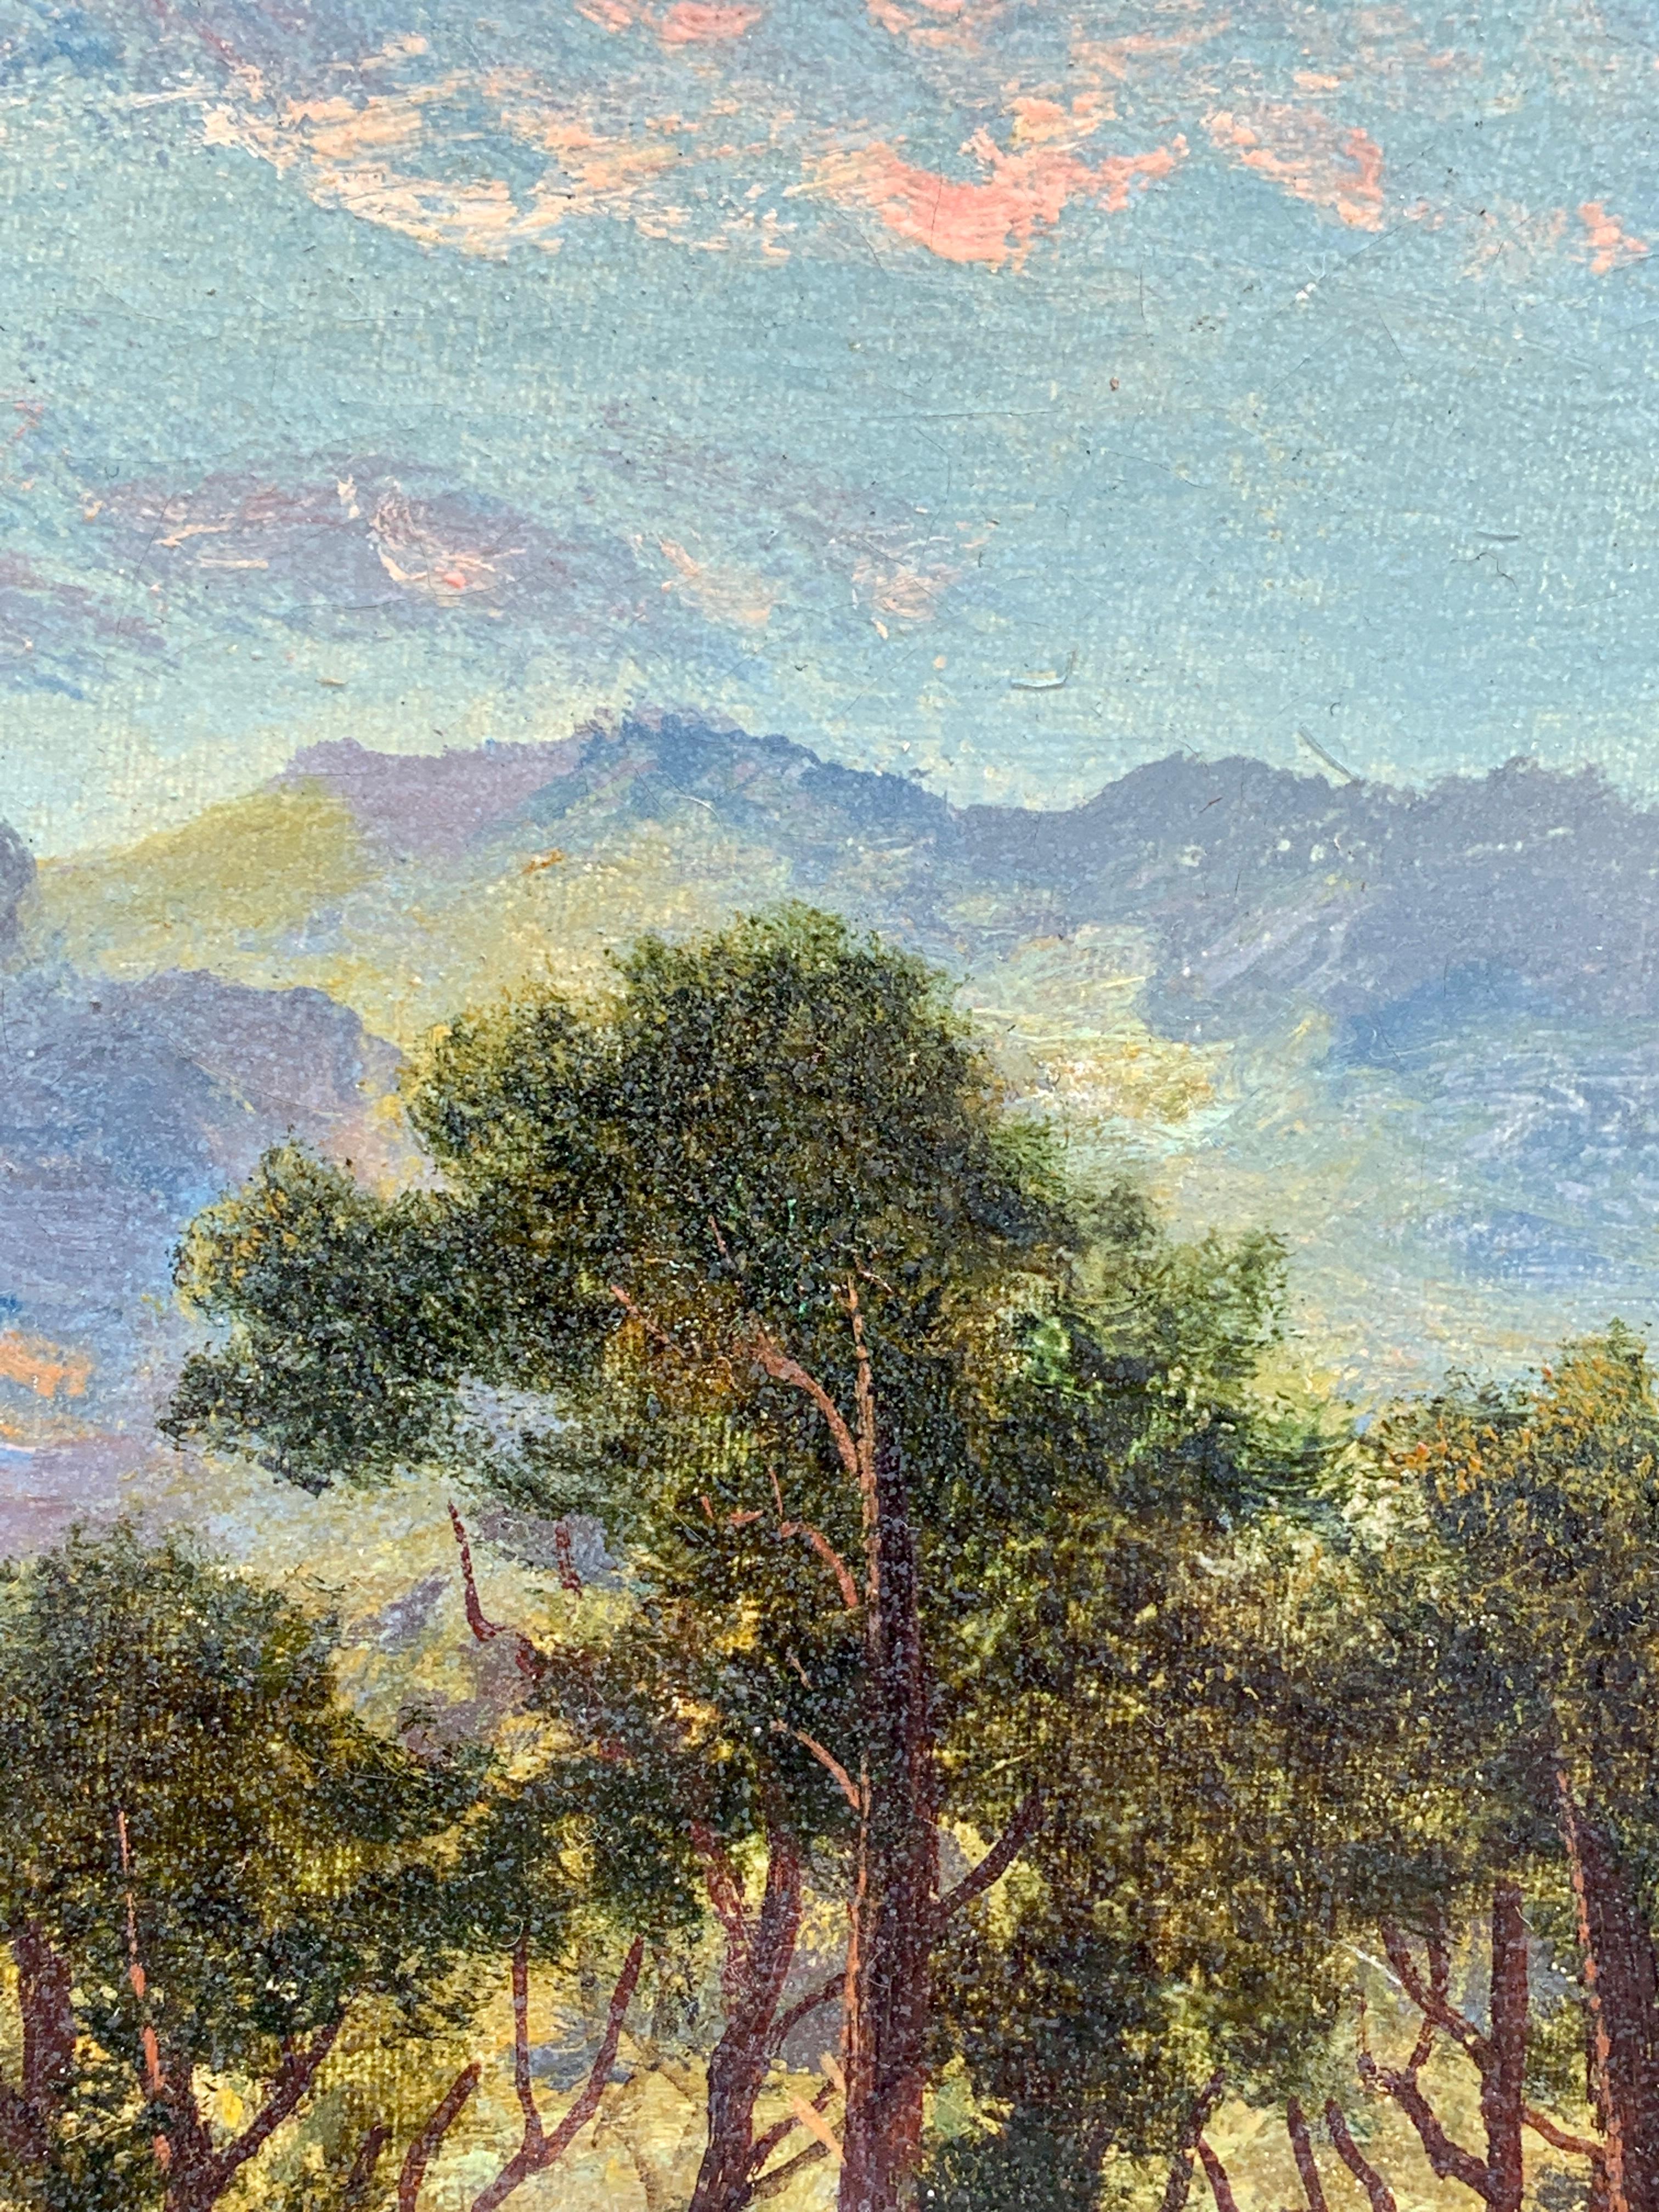 Schottische Hochland-Schlosslandschaft des späten 19. Jahrhunderts, mit Rindertränke

E. Mulready war mit ziemlicher Sicherheit ein Pseudonym für William Langley, einen bekannten englischen Landschaftsmaler aus den 1890er bis 1920er Jahren

Dieses